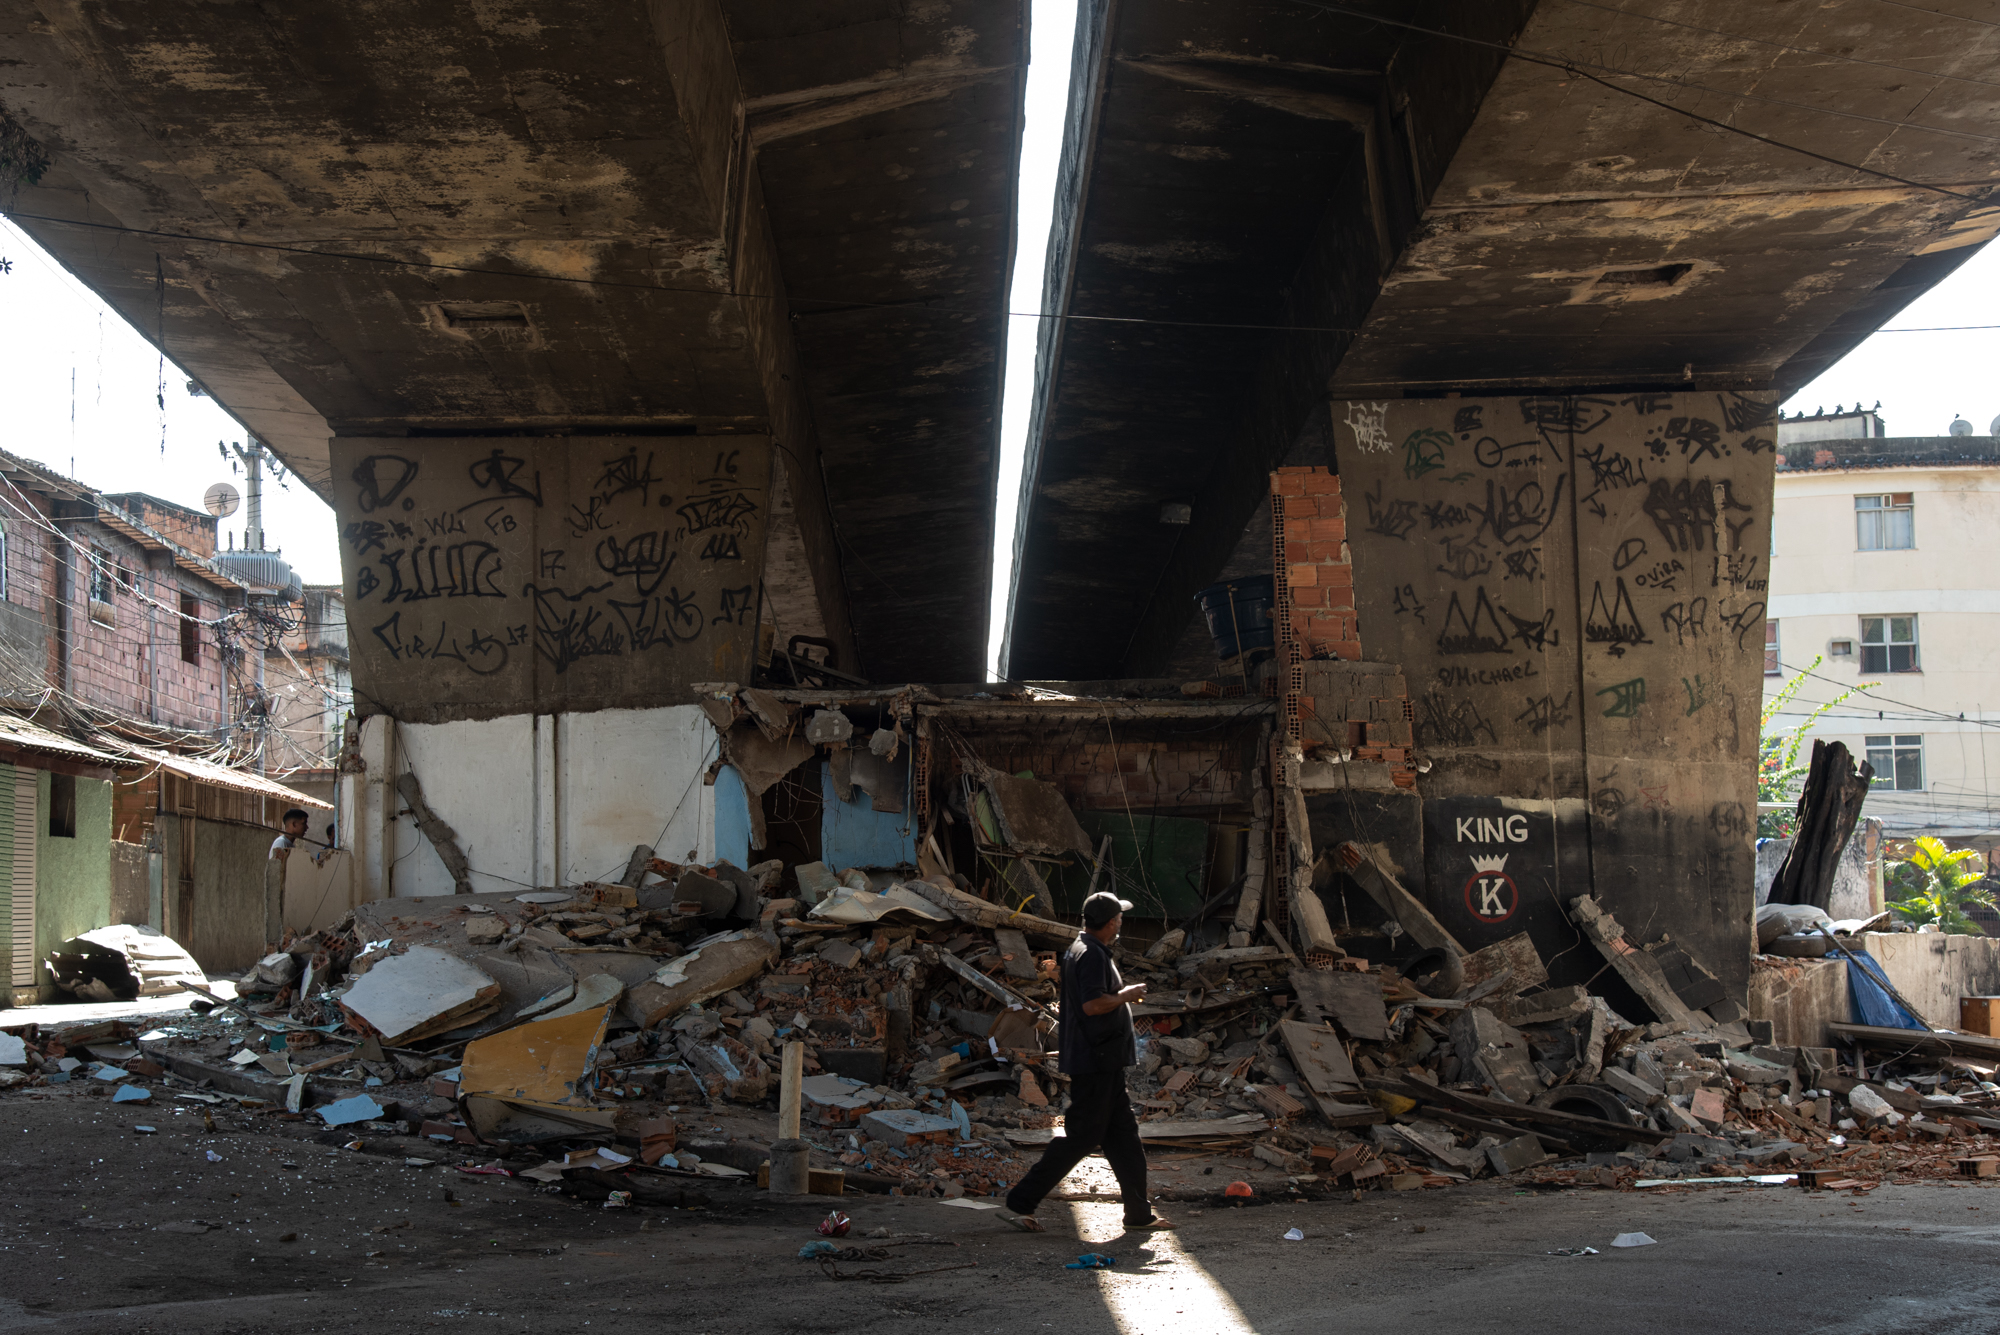 Ao final da operação, os comércios de moradores locais foram completamente destruídos. Foto: Bárbara Dias